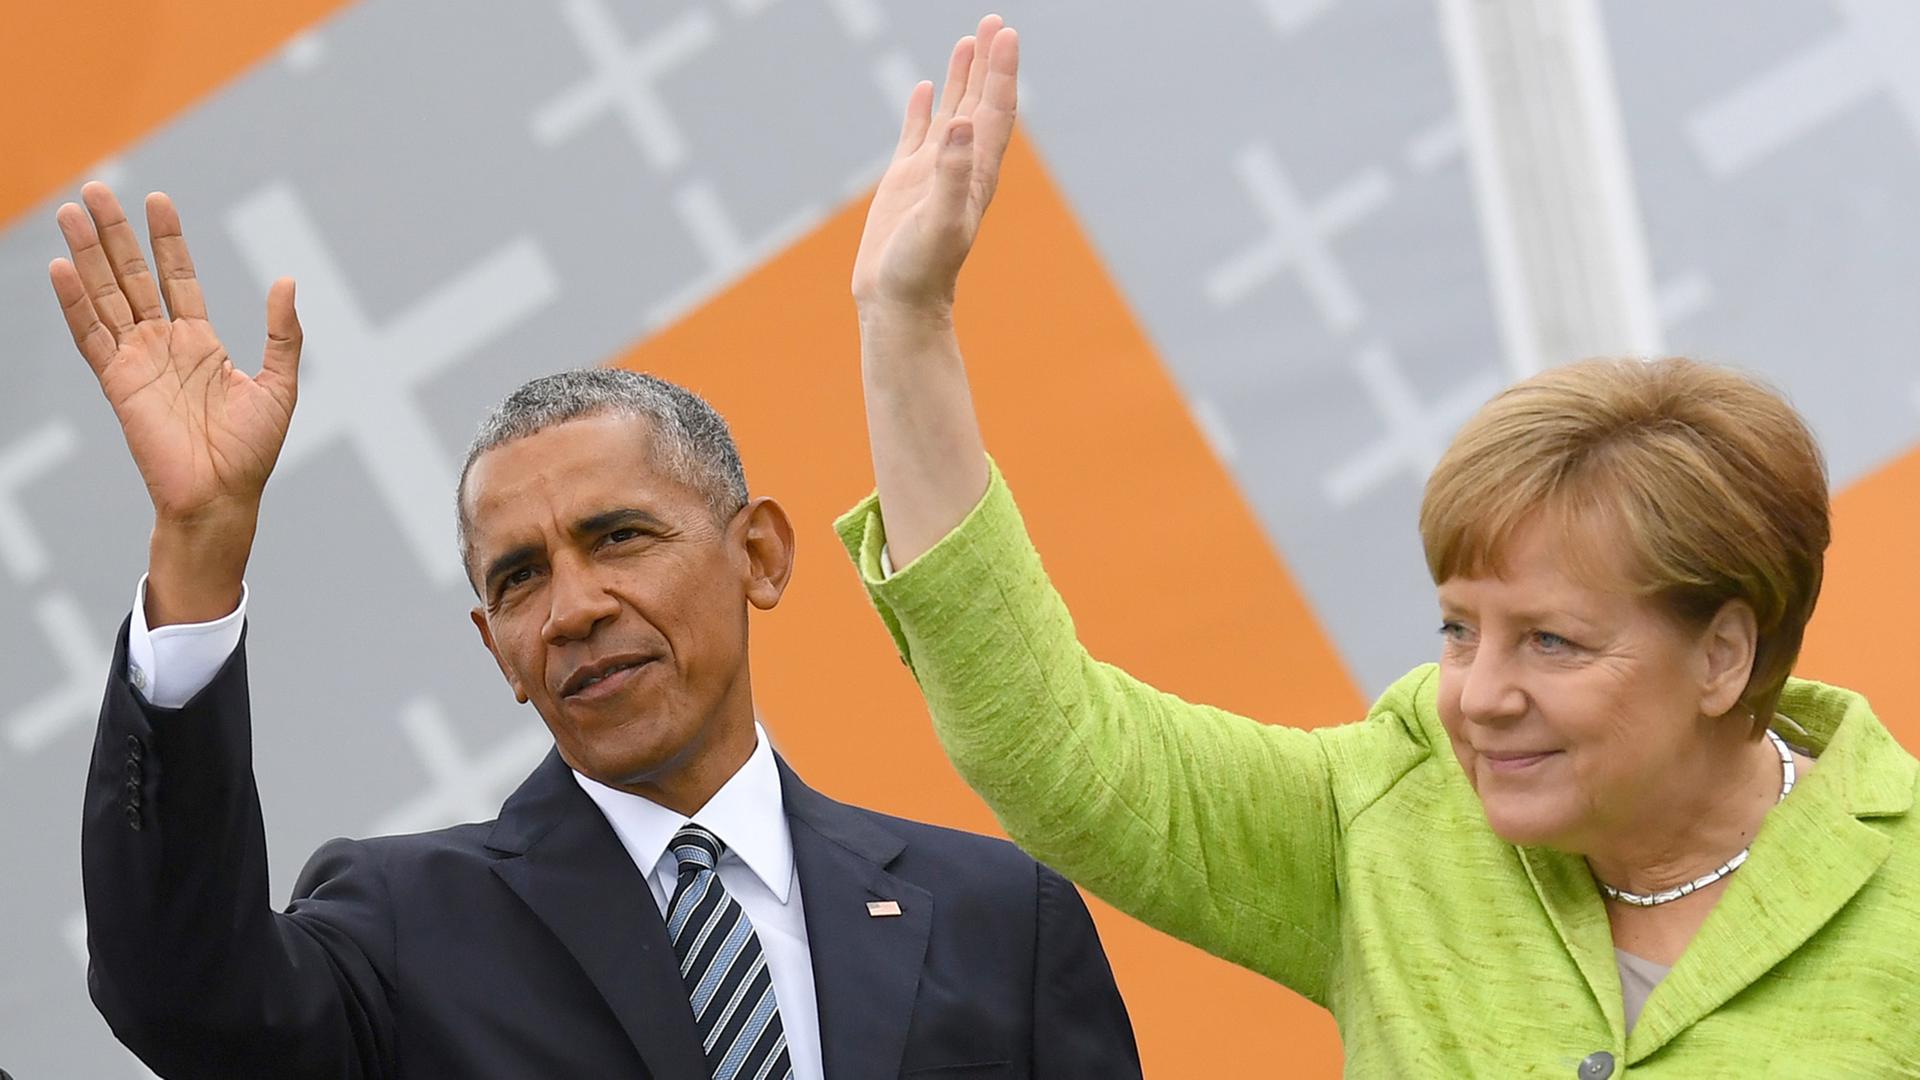 Bundeskanzlerin Angela Merkel und Ex-US-Präsident Barack Obama winken am 25. Mai 2017 in Berlin vor dem Brandenburger Tor beim Deutschem Evangelischem Kirchentag Besuchern zu.